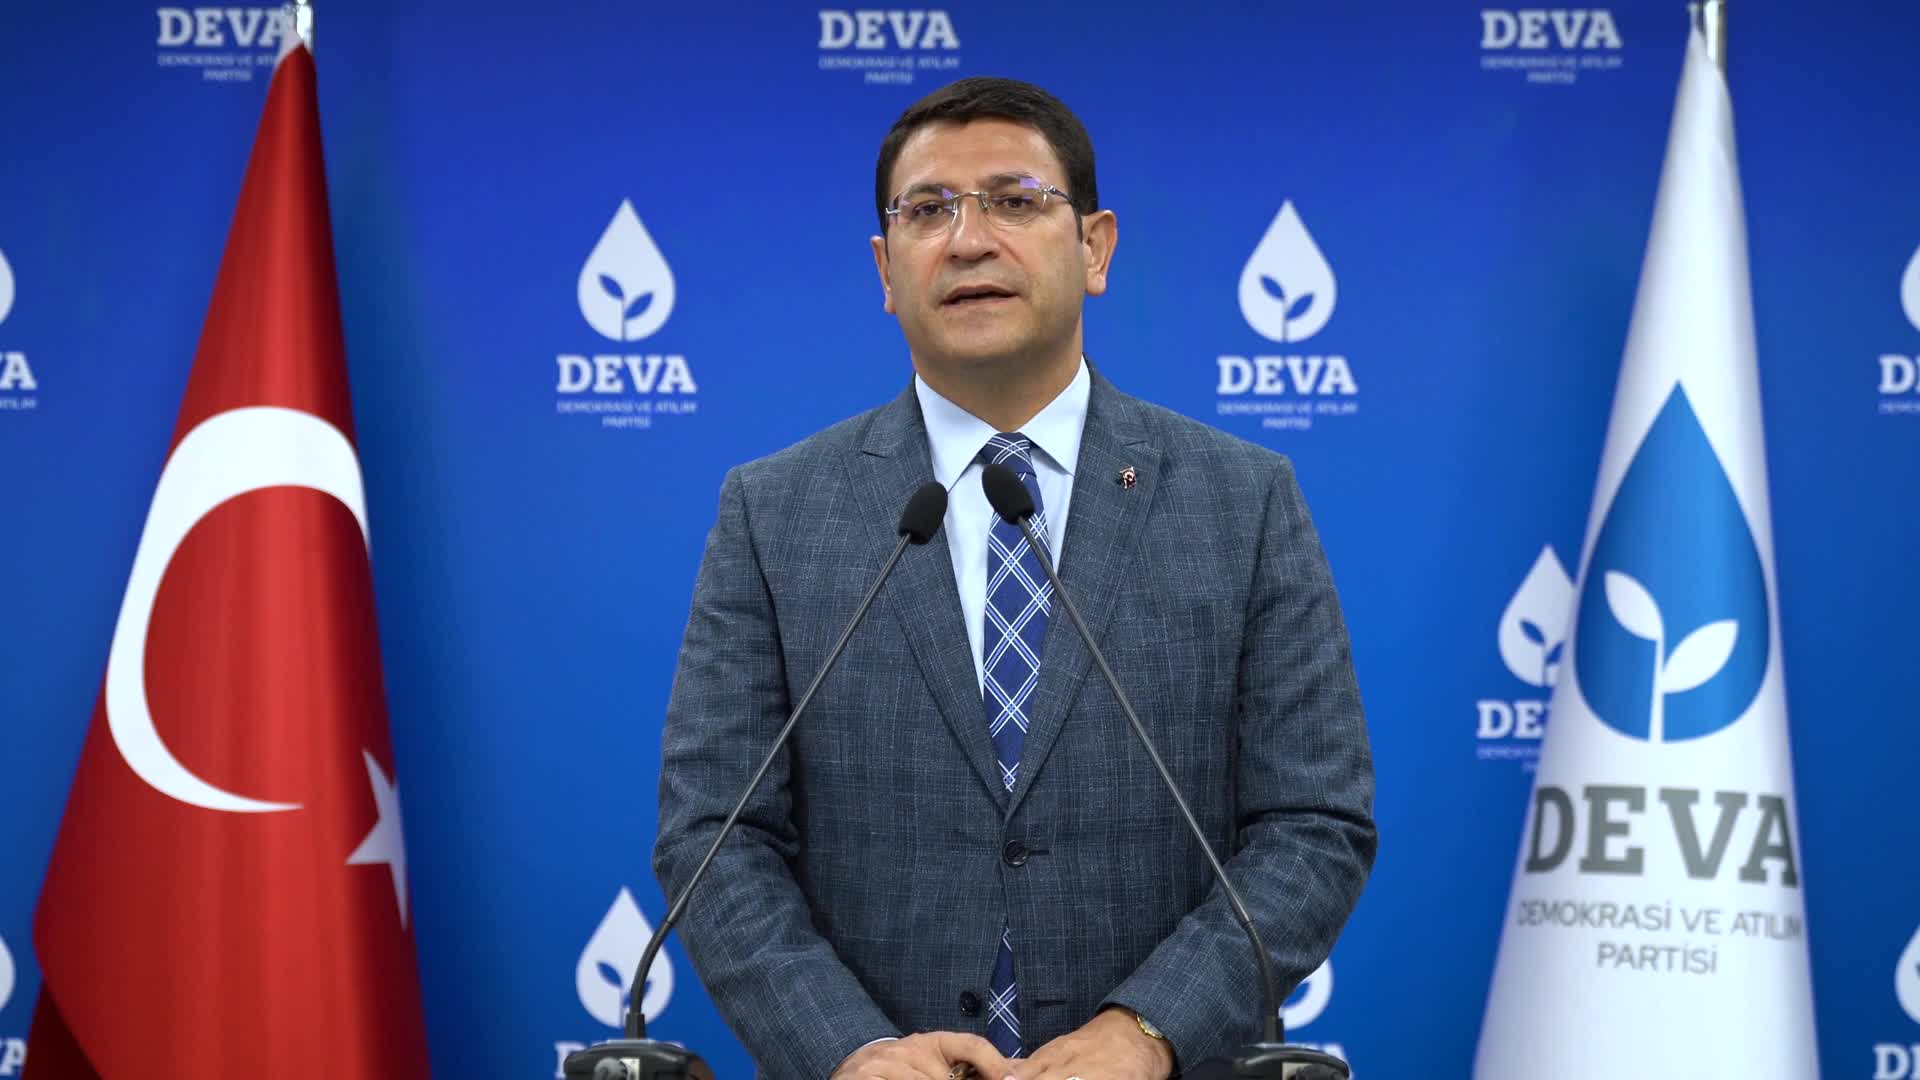 DEVA Partisi Sözcüsü Şahin: Memur zamları çalışanlar için fiyasko